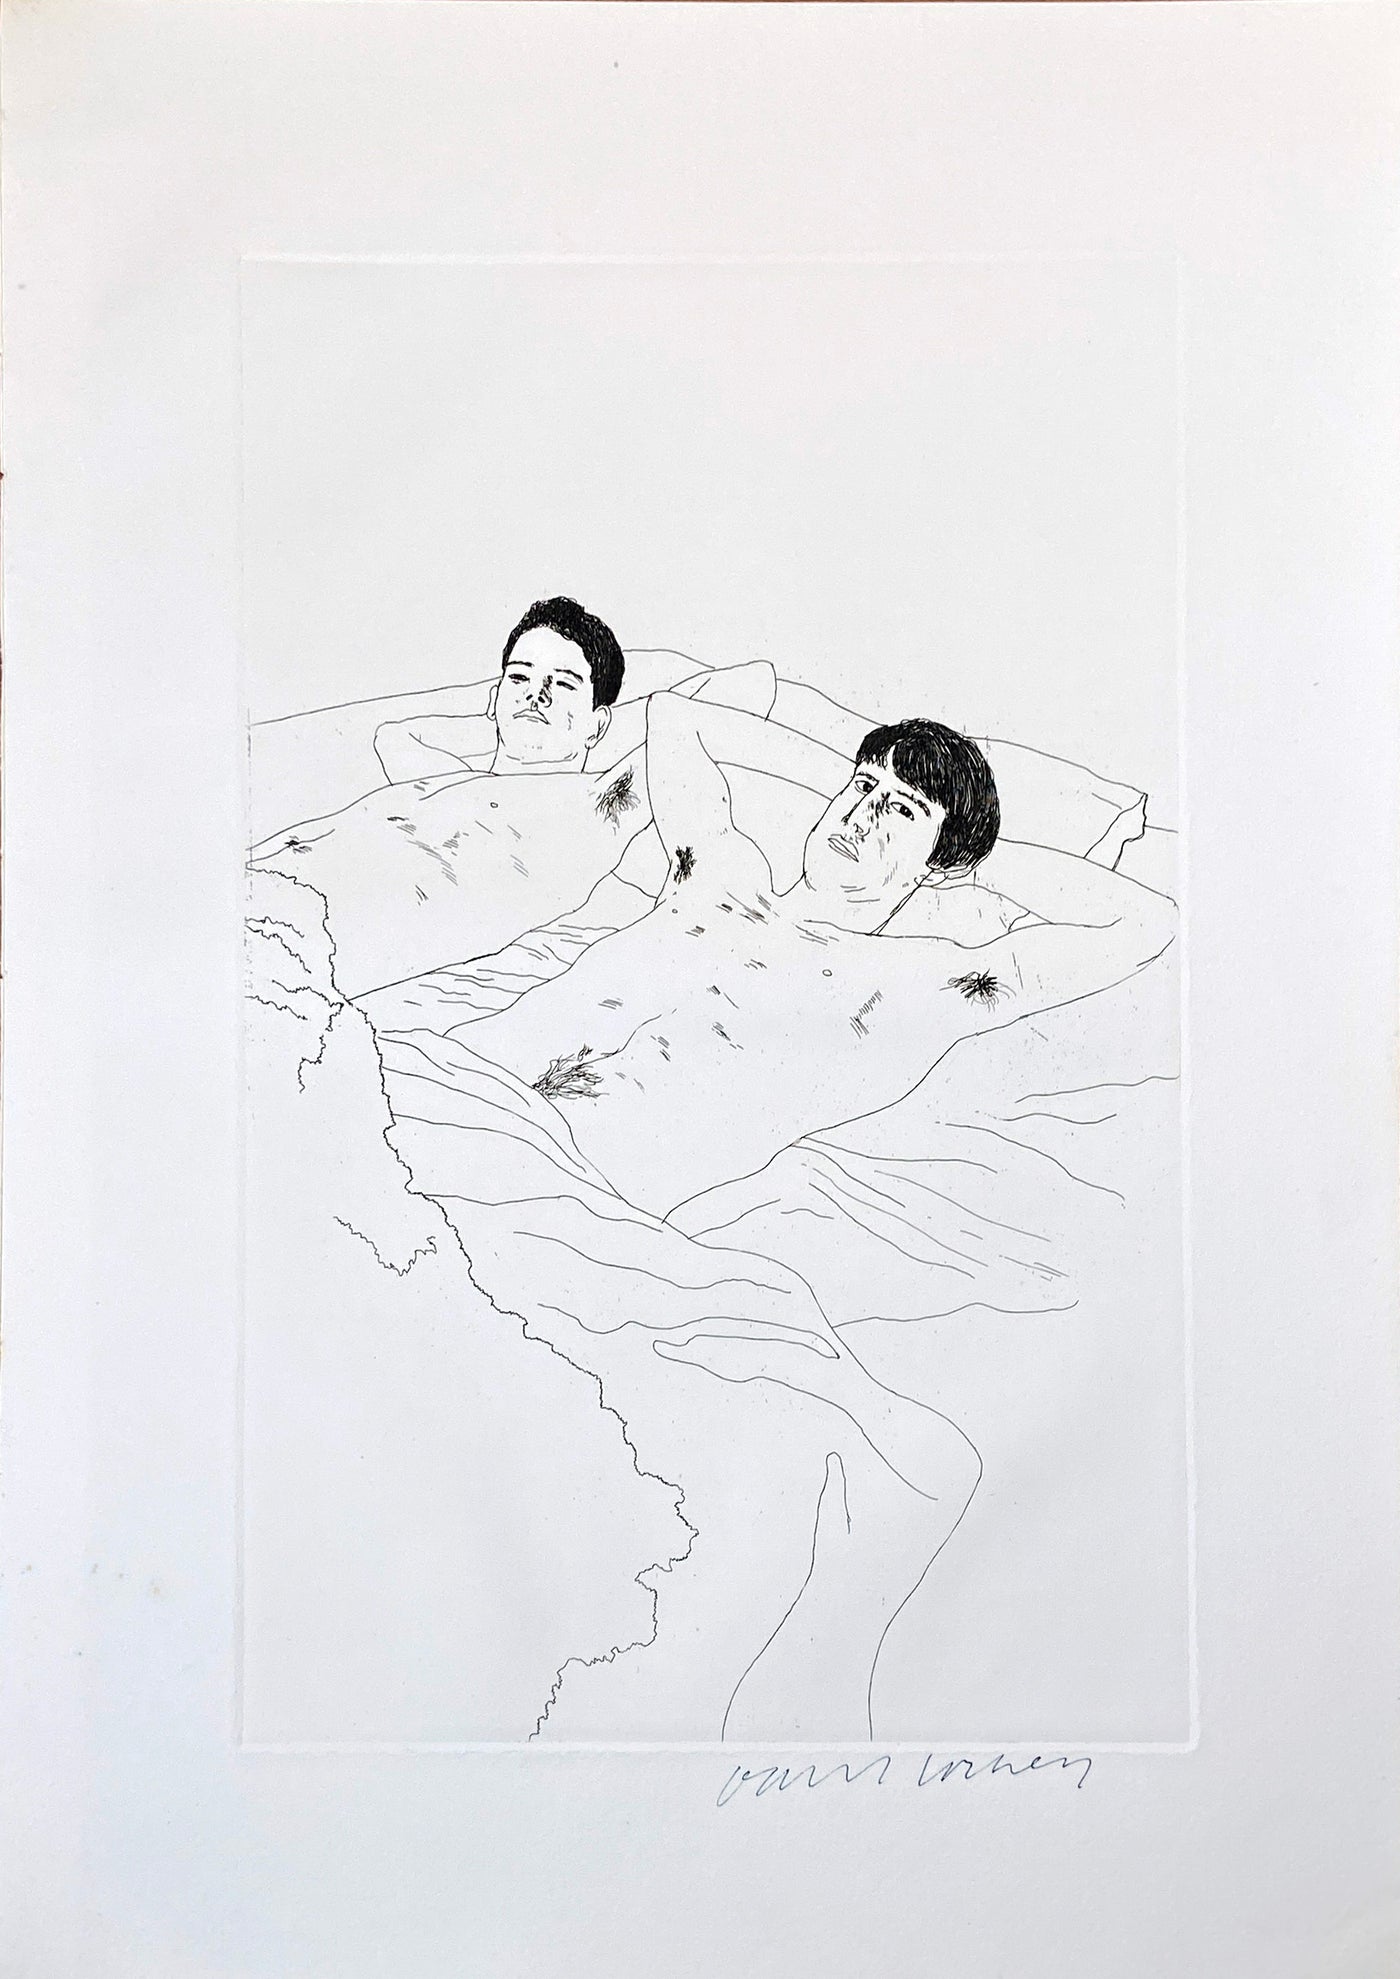 David Hockney, 'In Despair', 1966-67